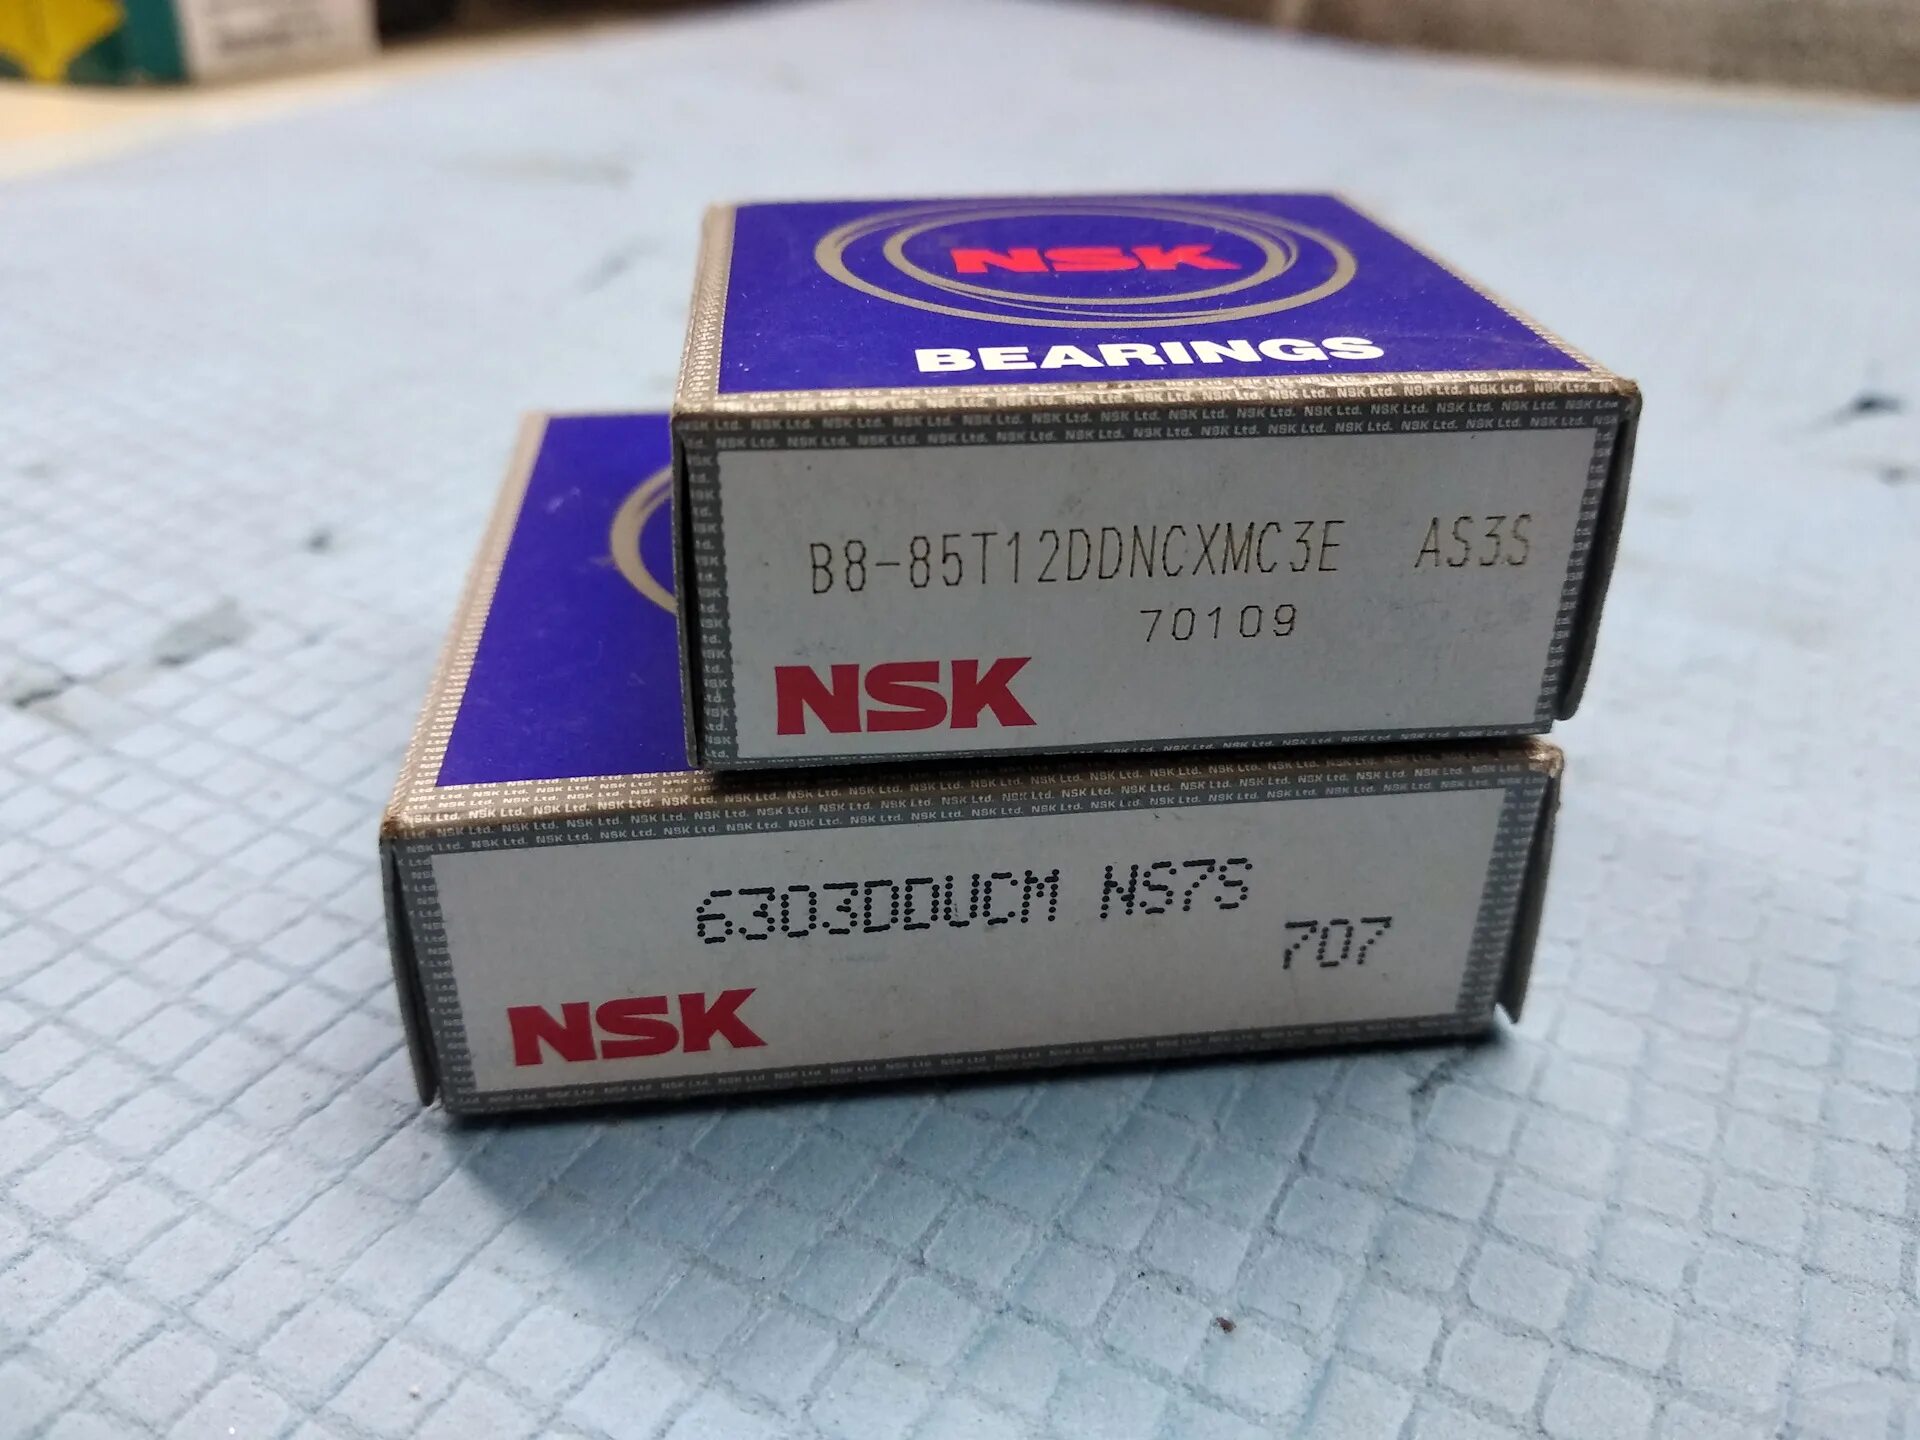 85 8 c. B885t12ddncxmc3e NSK подшипник генератора. 6303dducm. NSK 6202dducm. B885t12ddncxmc3e.